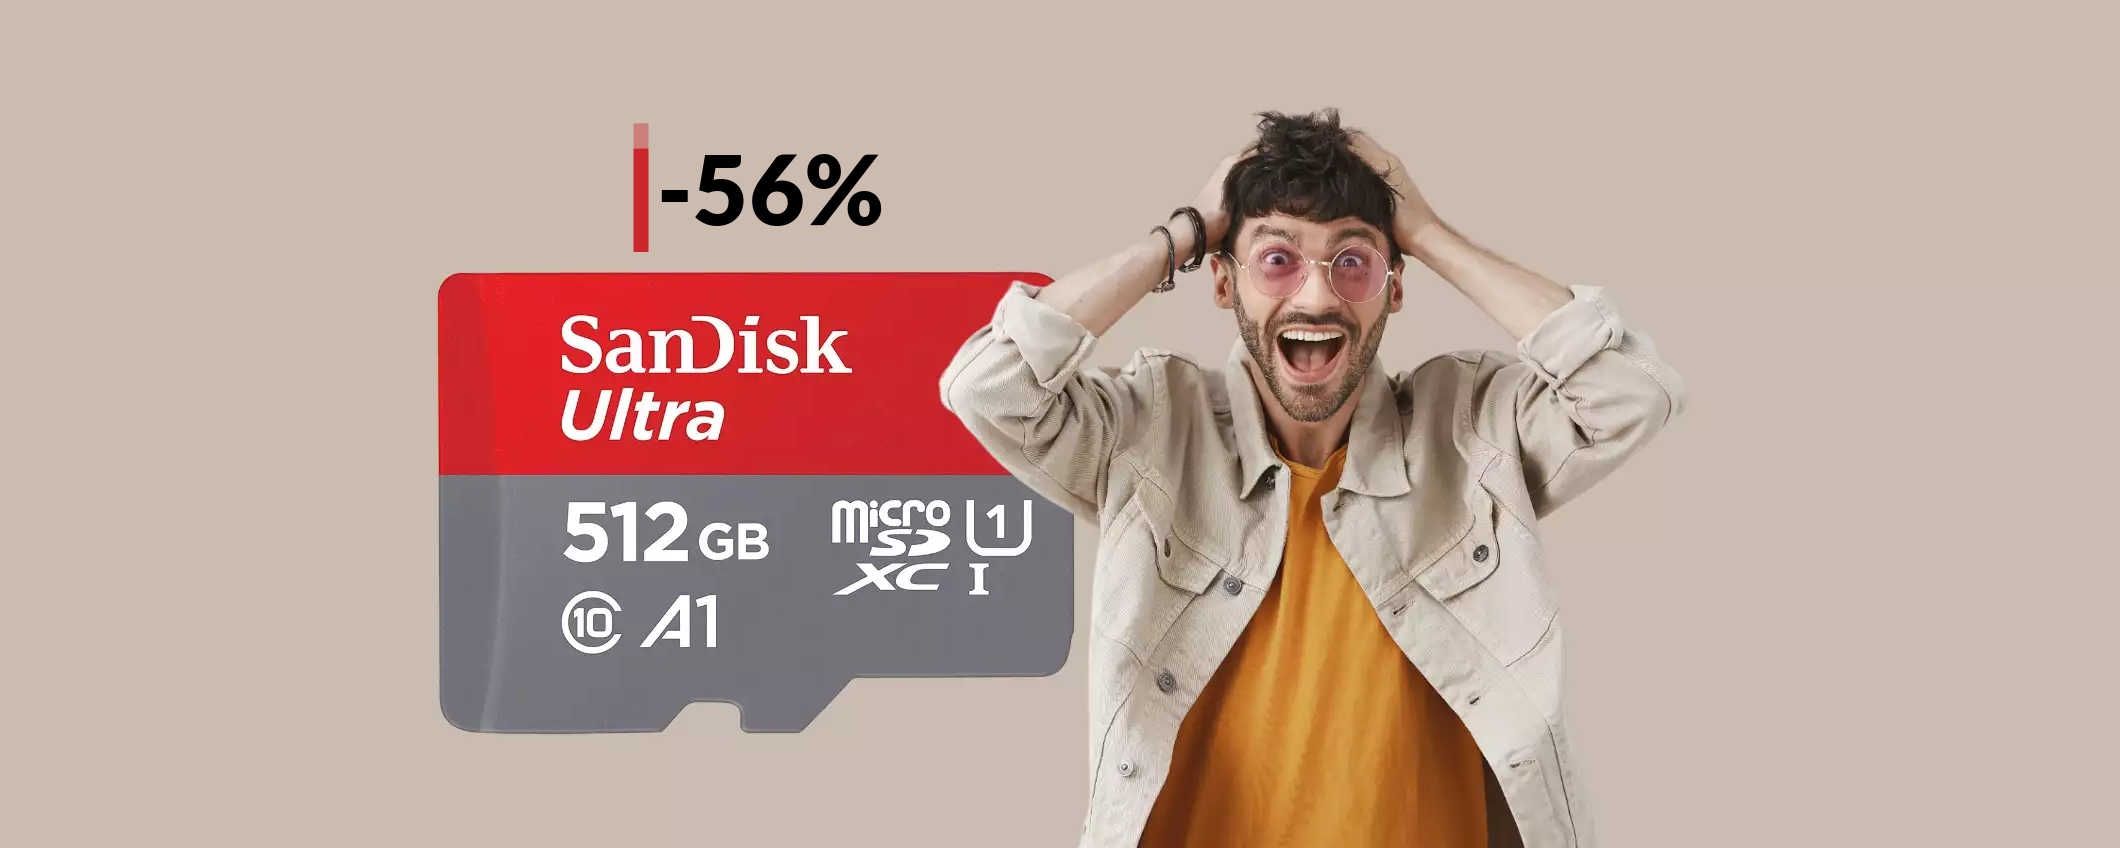 MicroSD SanDisk 512GB oggi a meno di METÀ PREZZO: solo 50€